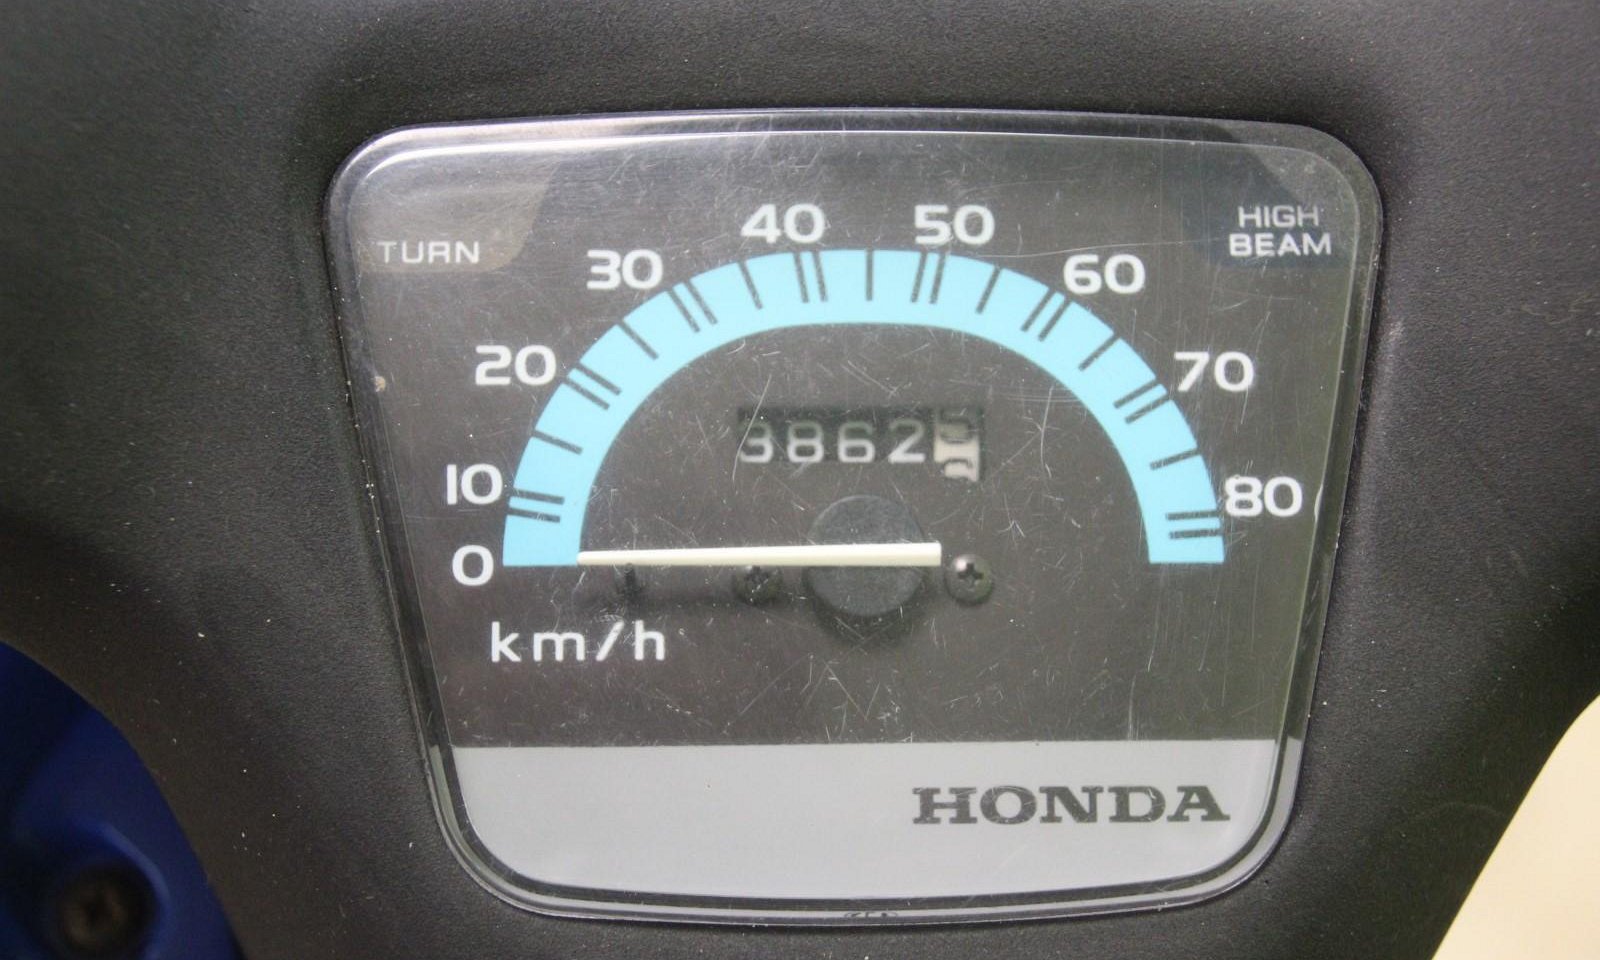 Honda Wallaroo